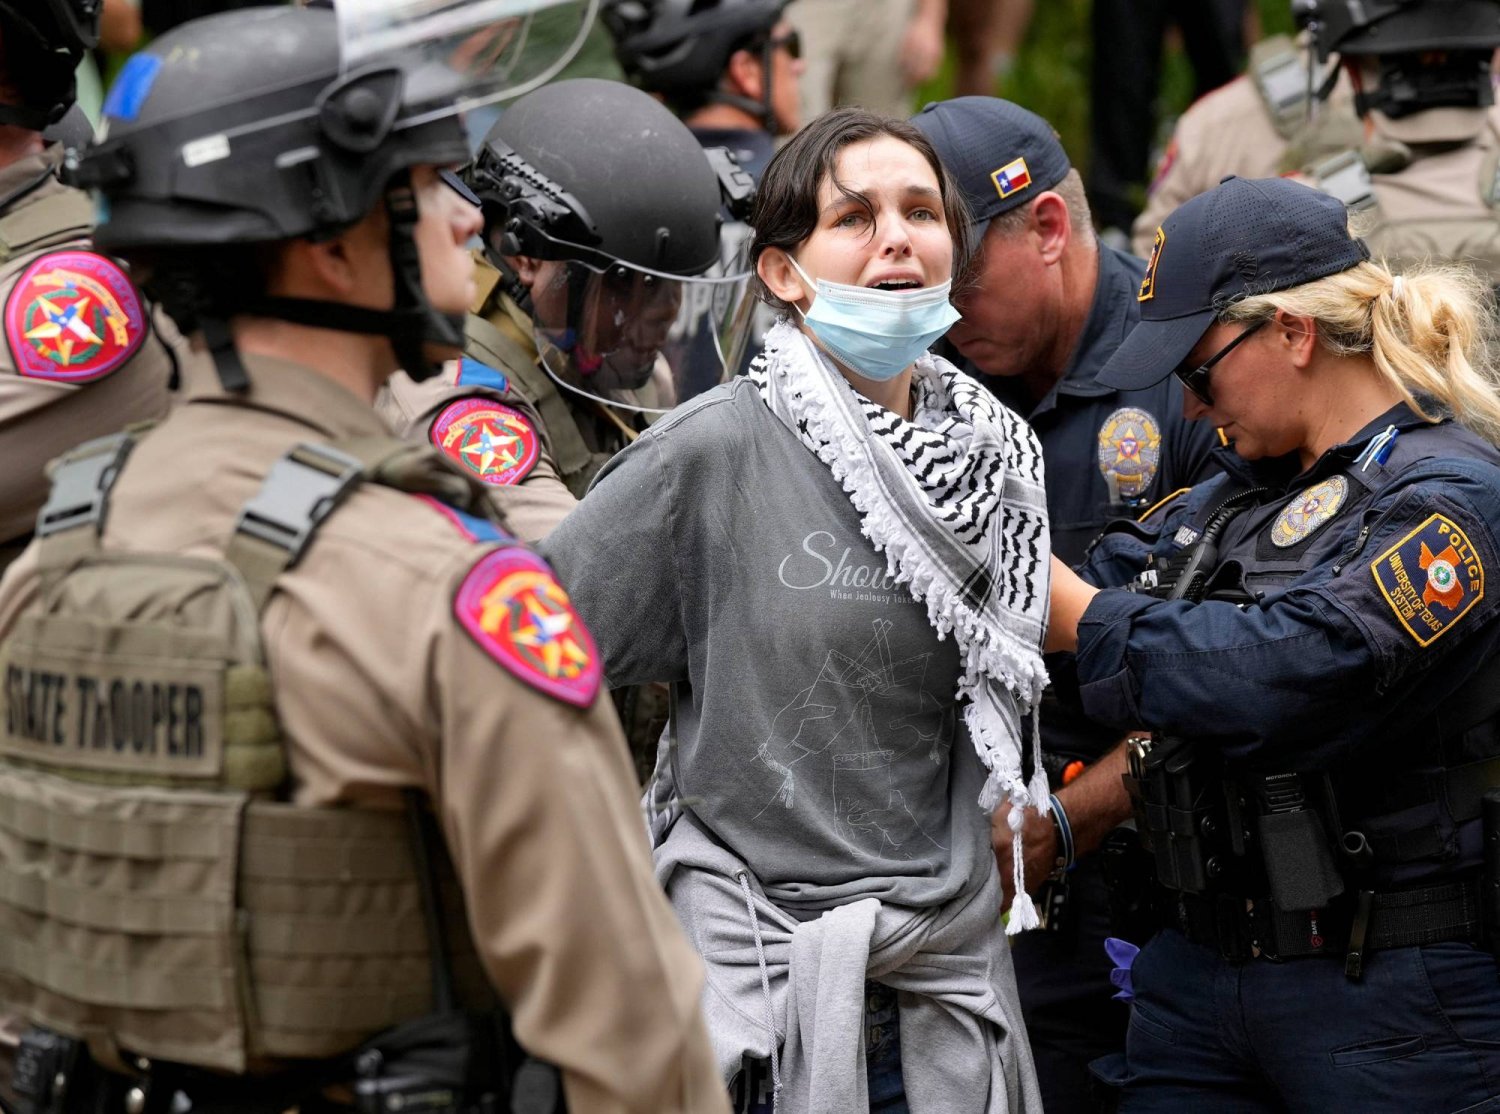 قوات الأمن تعتقل امرأة خلال احتجاجات مؤيدة للفلسطينيين في جامعة تكساس الأميركية (رويترز)